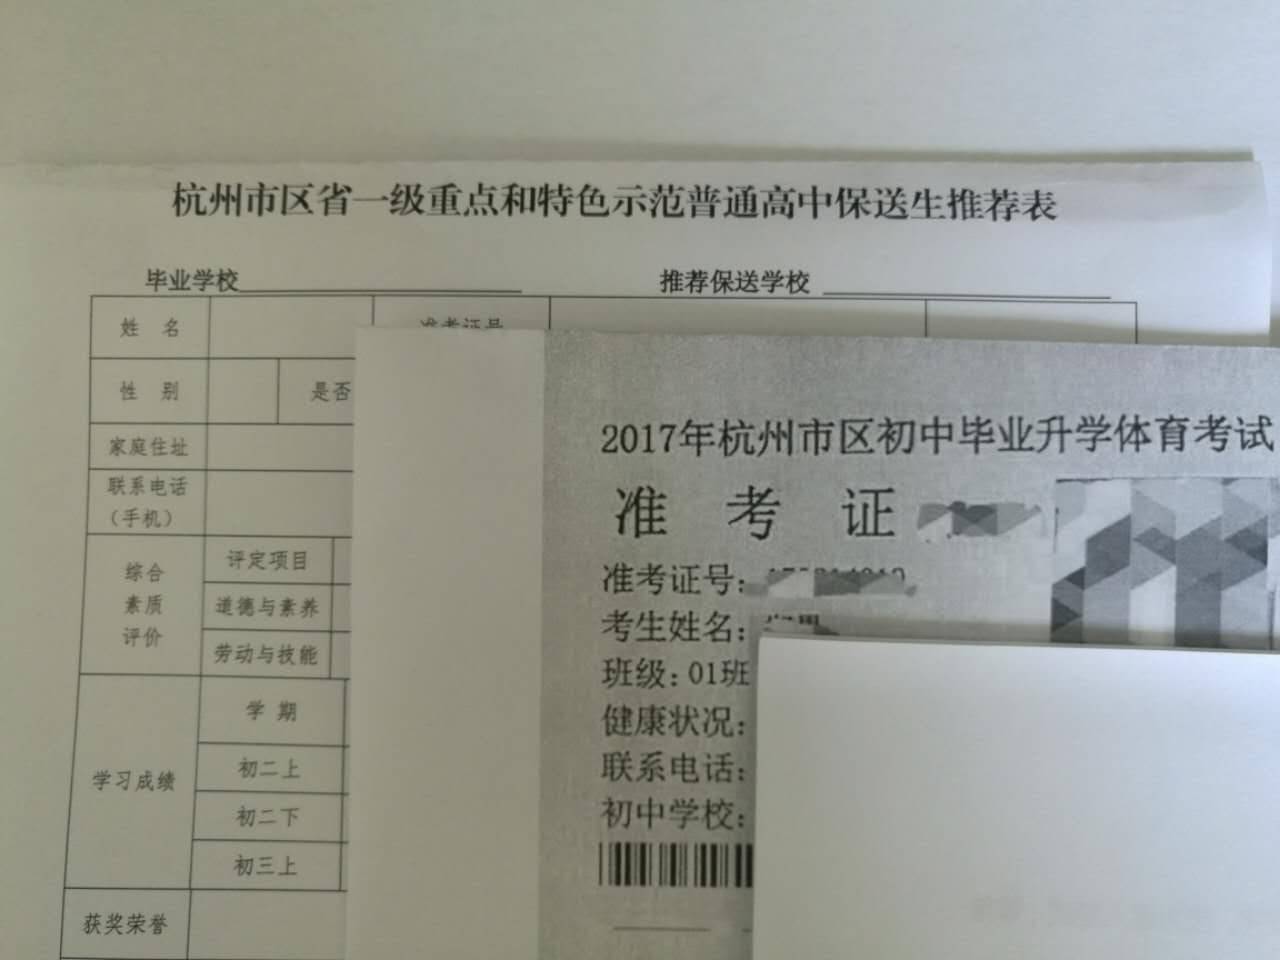 2017杭州学军中学保送生选拔考试指南1